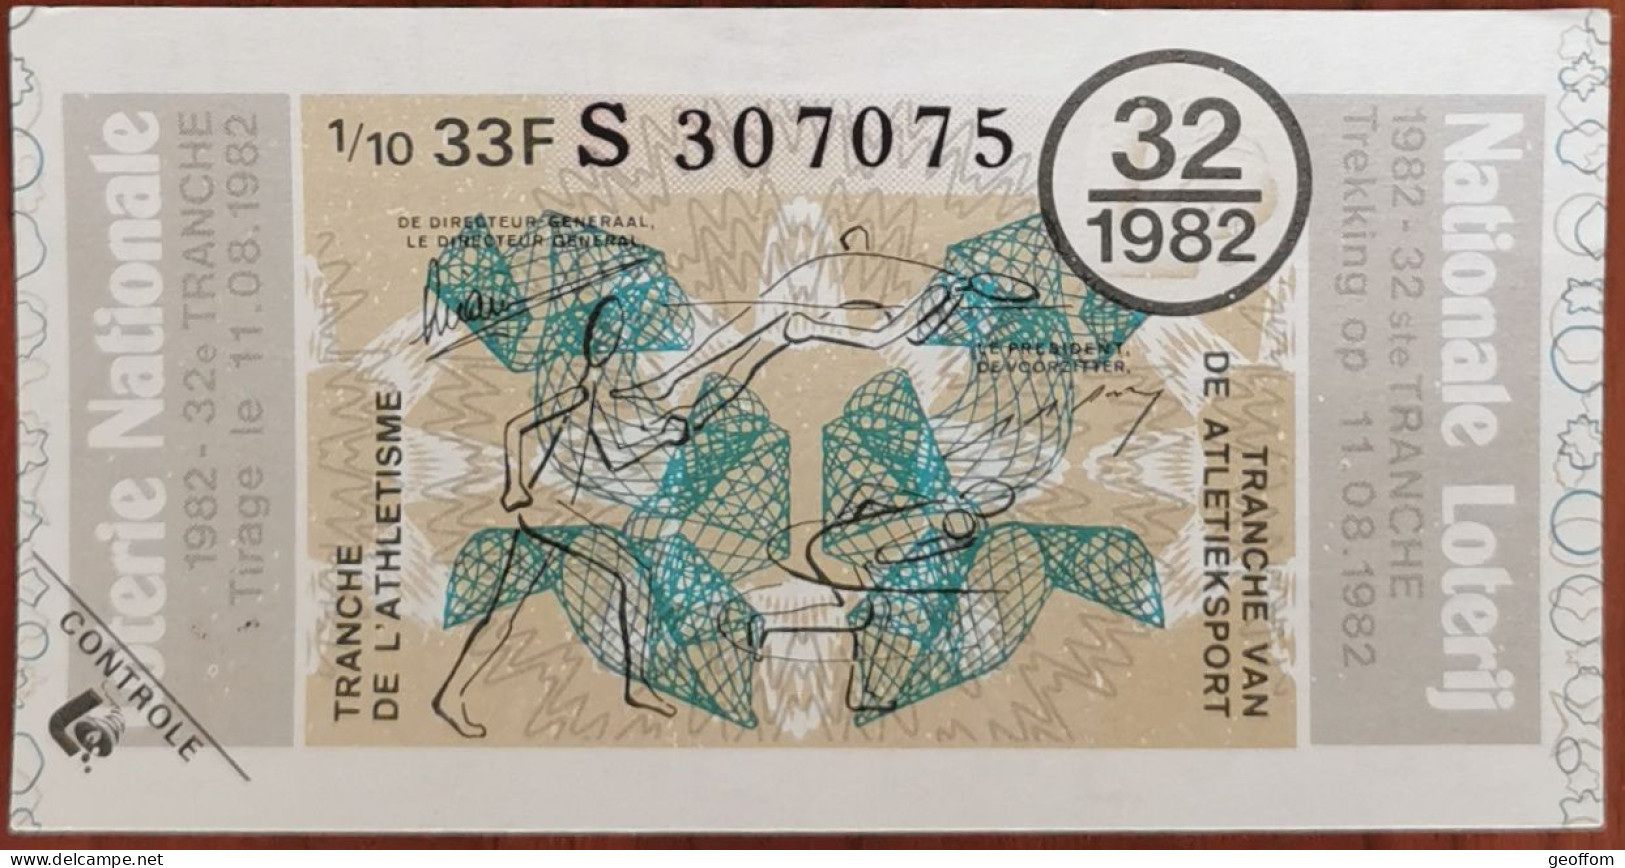 Billet De Loterie Nationale Belgique 1982 32e Tr - Tranche De L'Athlétisme - 11-8-1982 - Billetes De Lotería